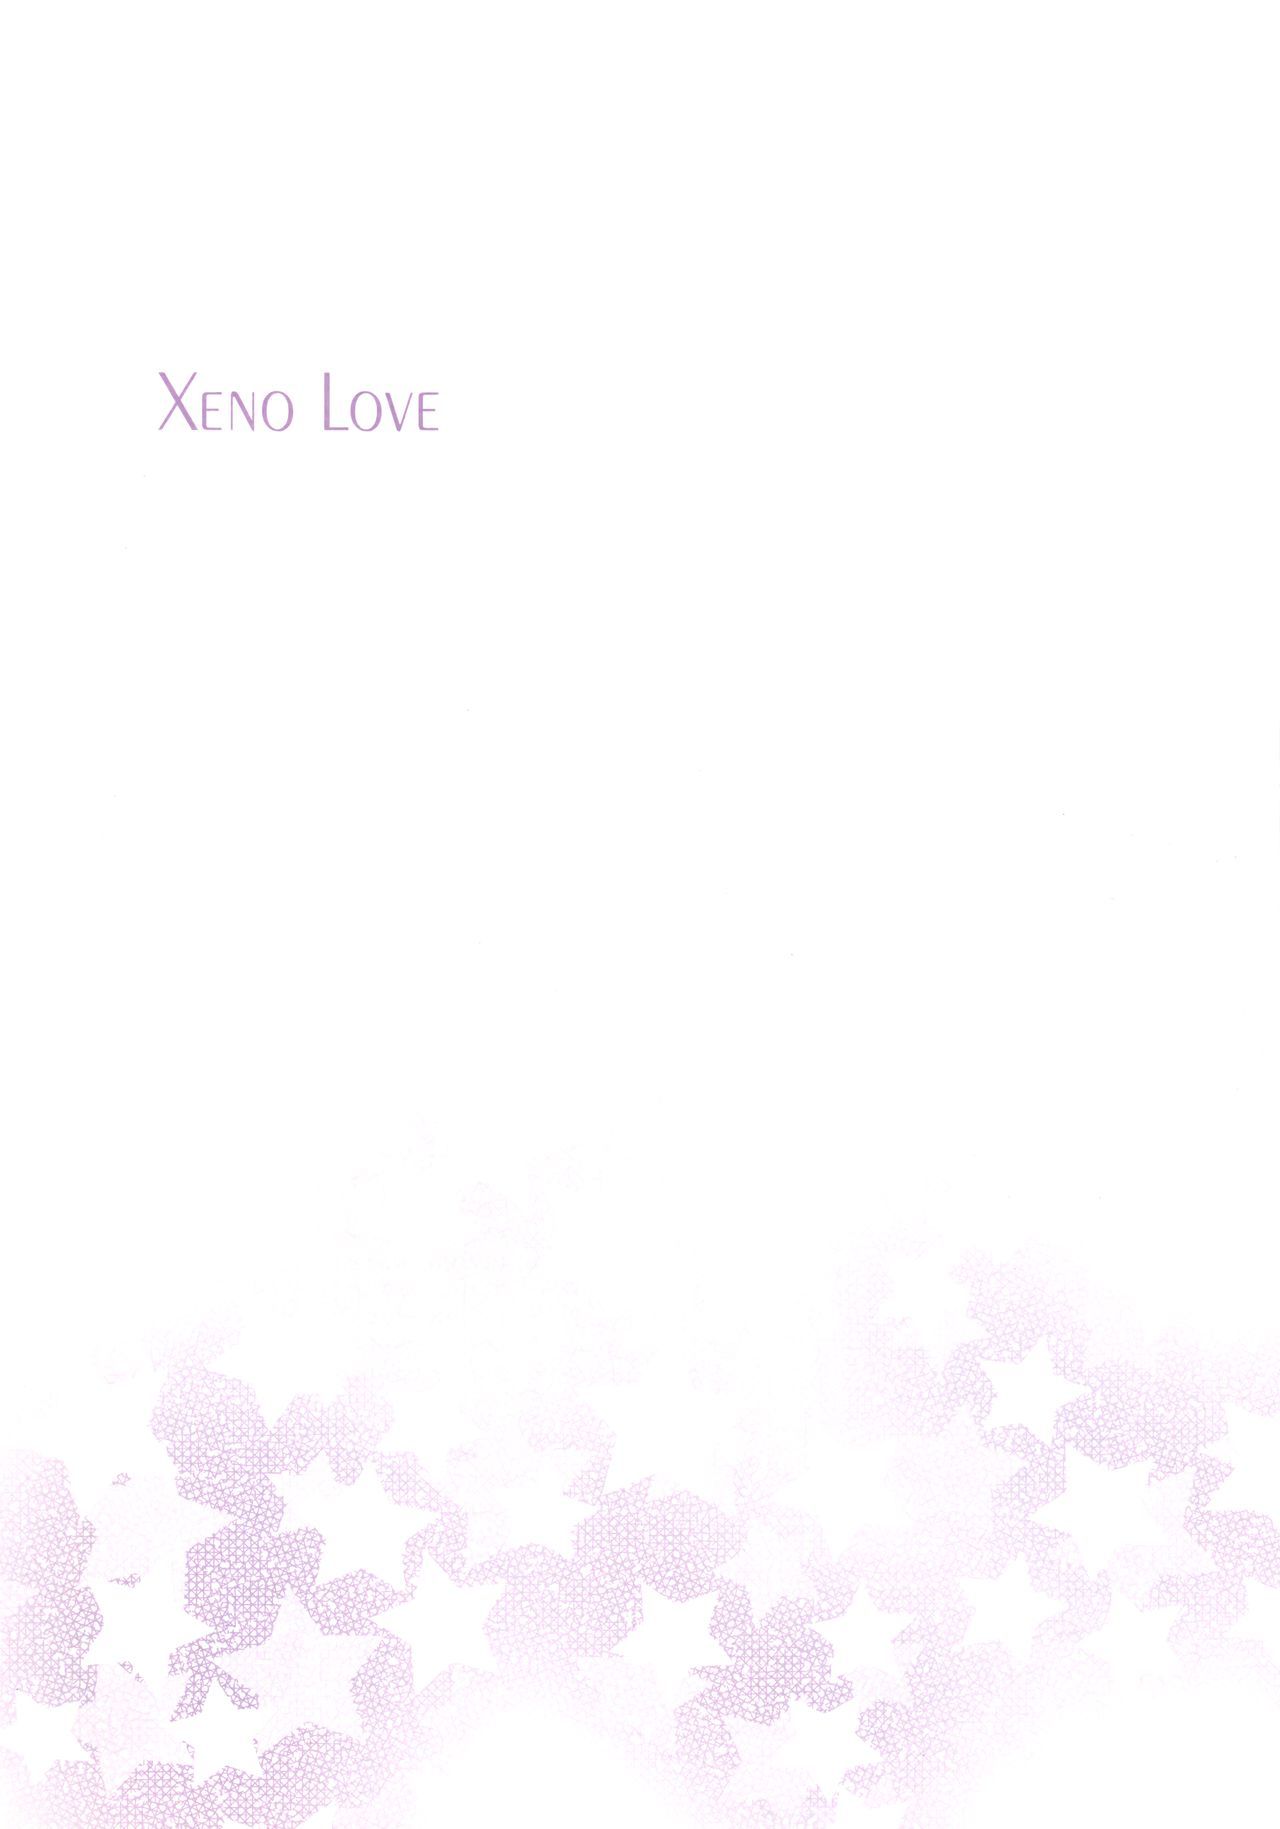 Xeno Love